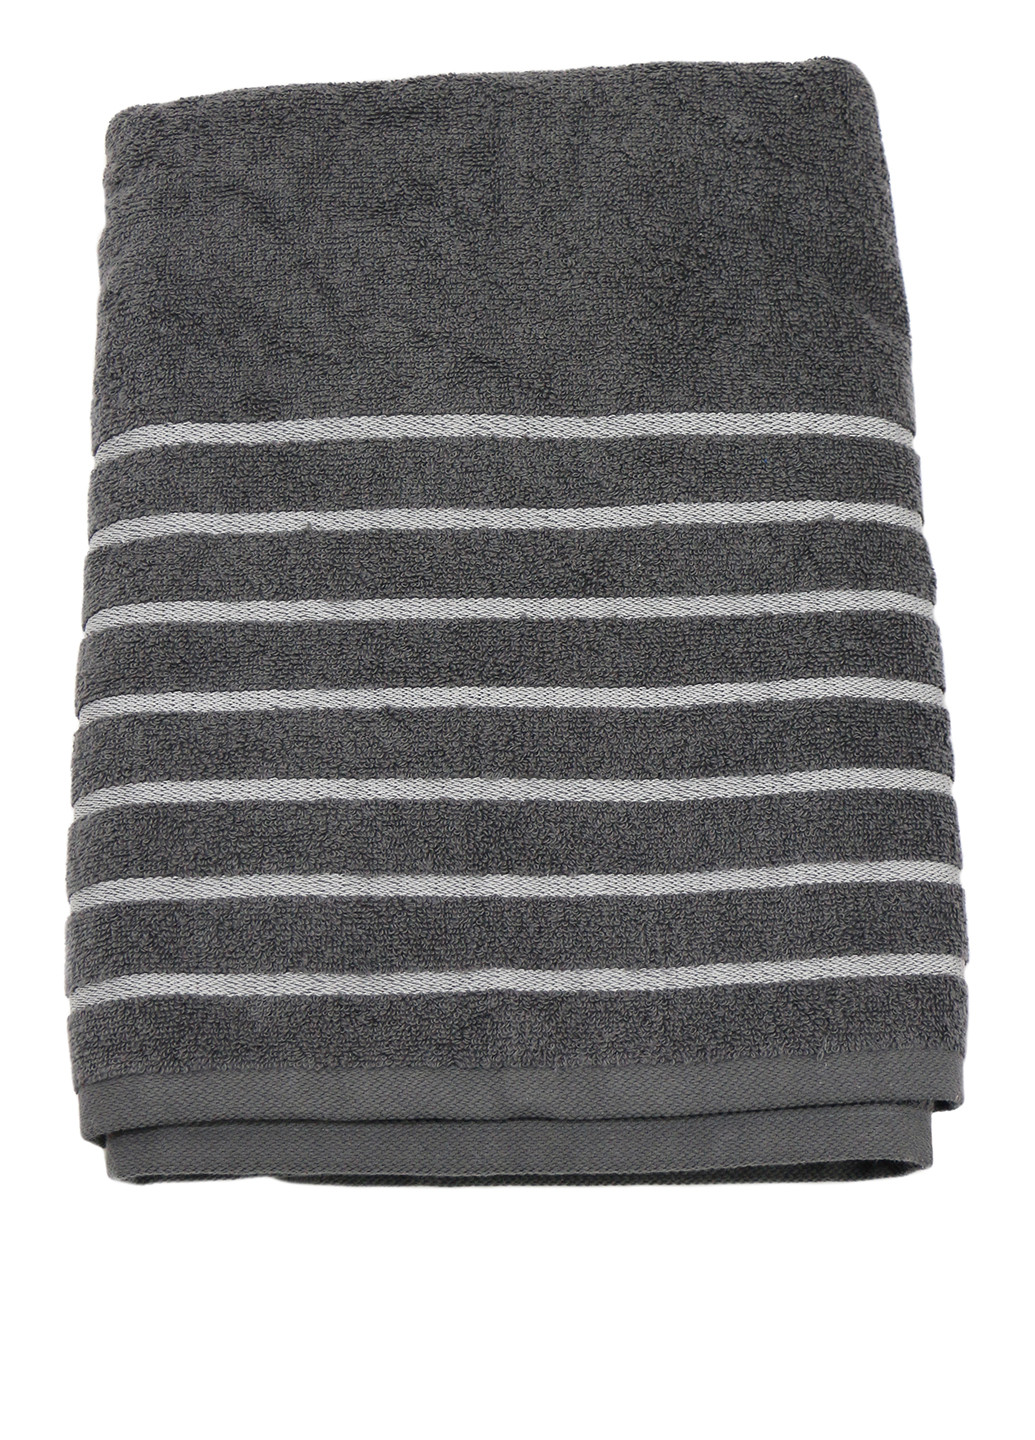 Miomare полотенце, 70х140 см полоска темно-серый производство - Германия